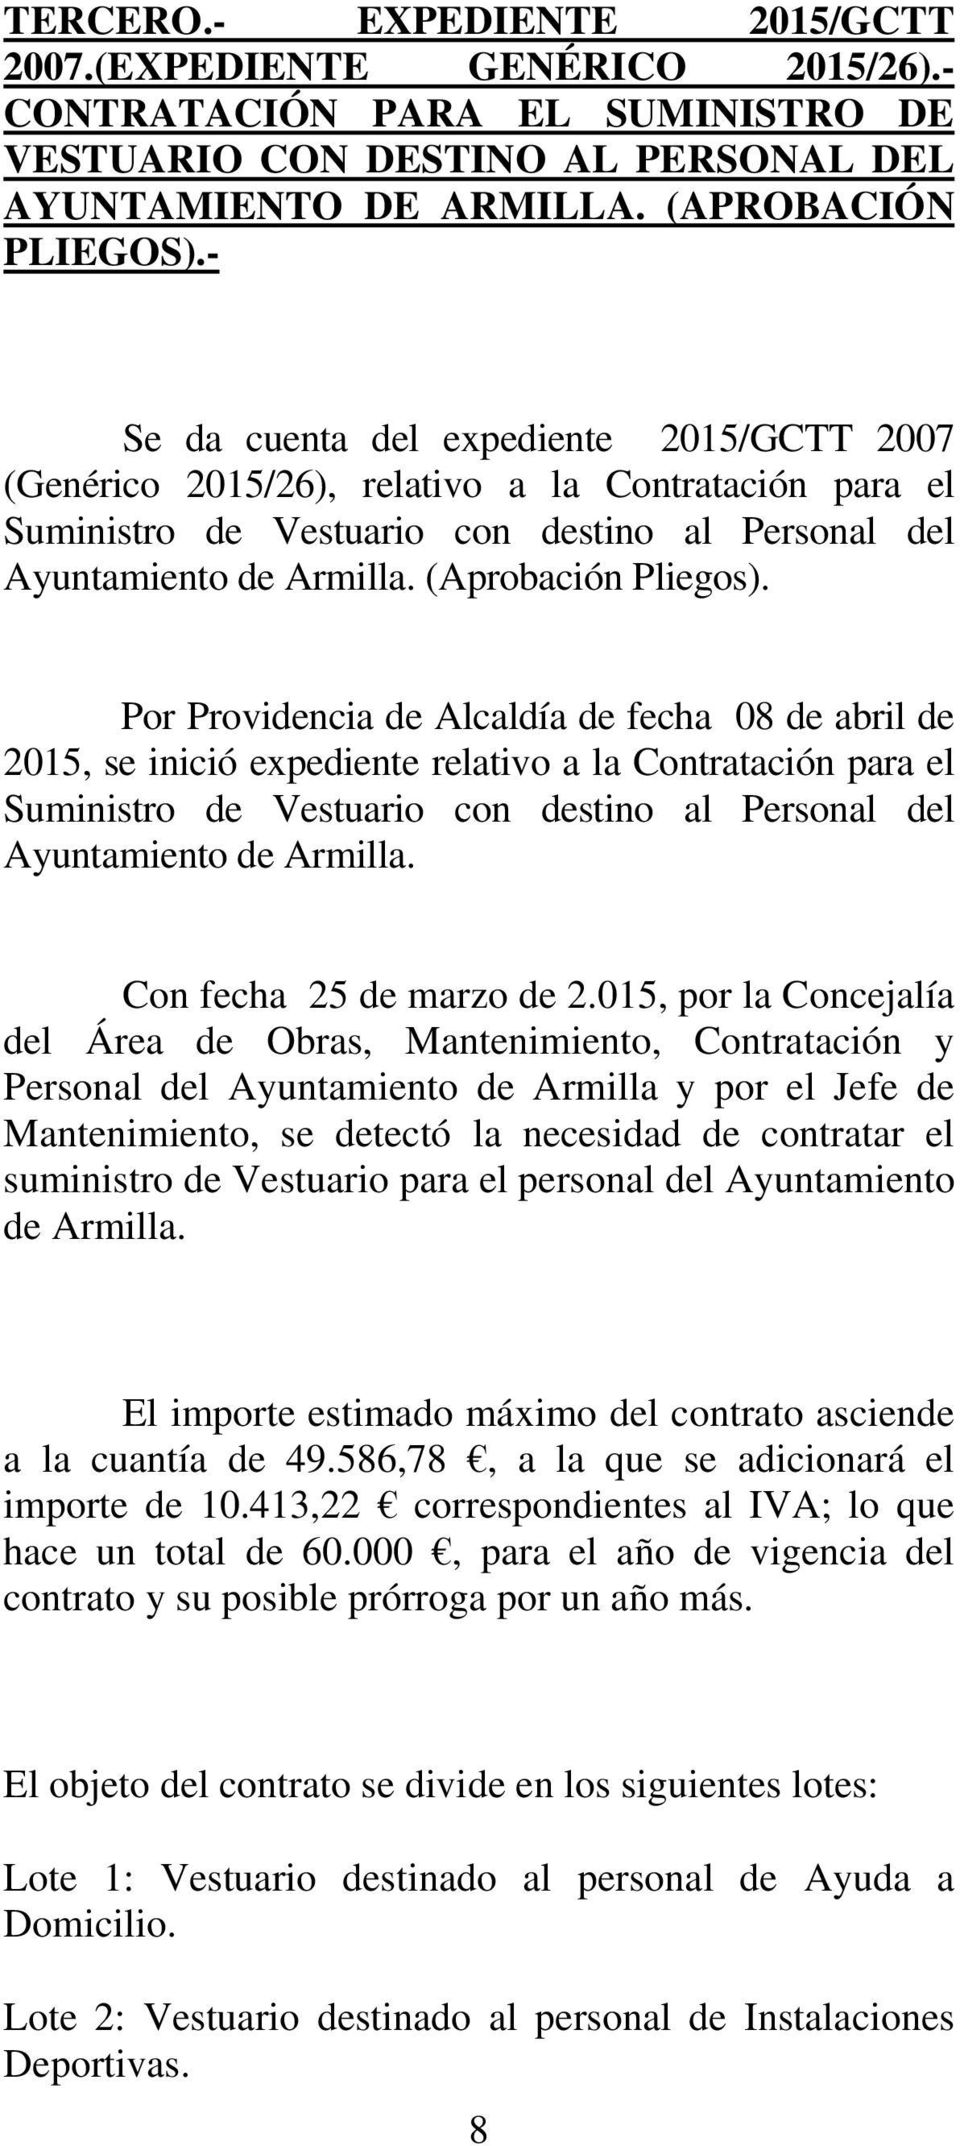 Por Providencia de Alcaldía de fecha 08 de abril de 2015, se inició expediente relativo a la Contratación para el Suministro de Vestuario con destino al Personal del Ayuntamiento de Armilla.